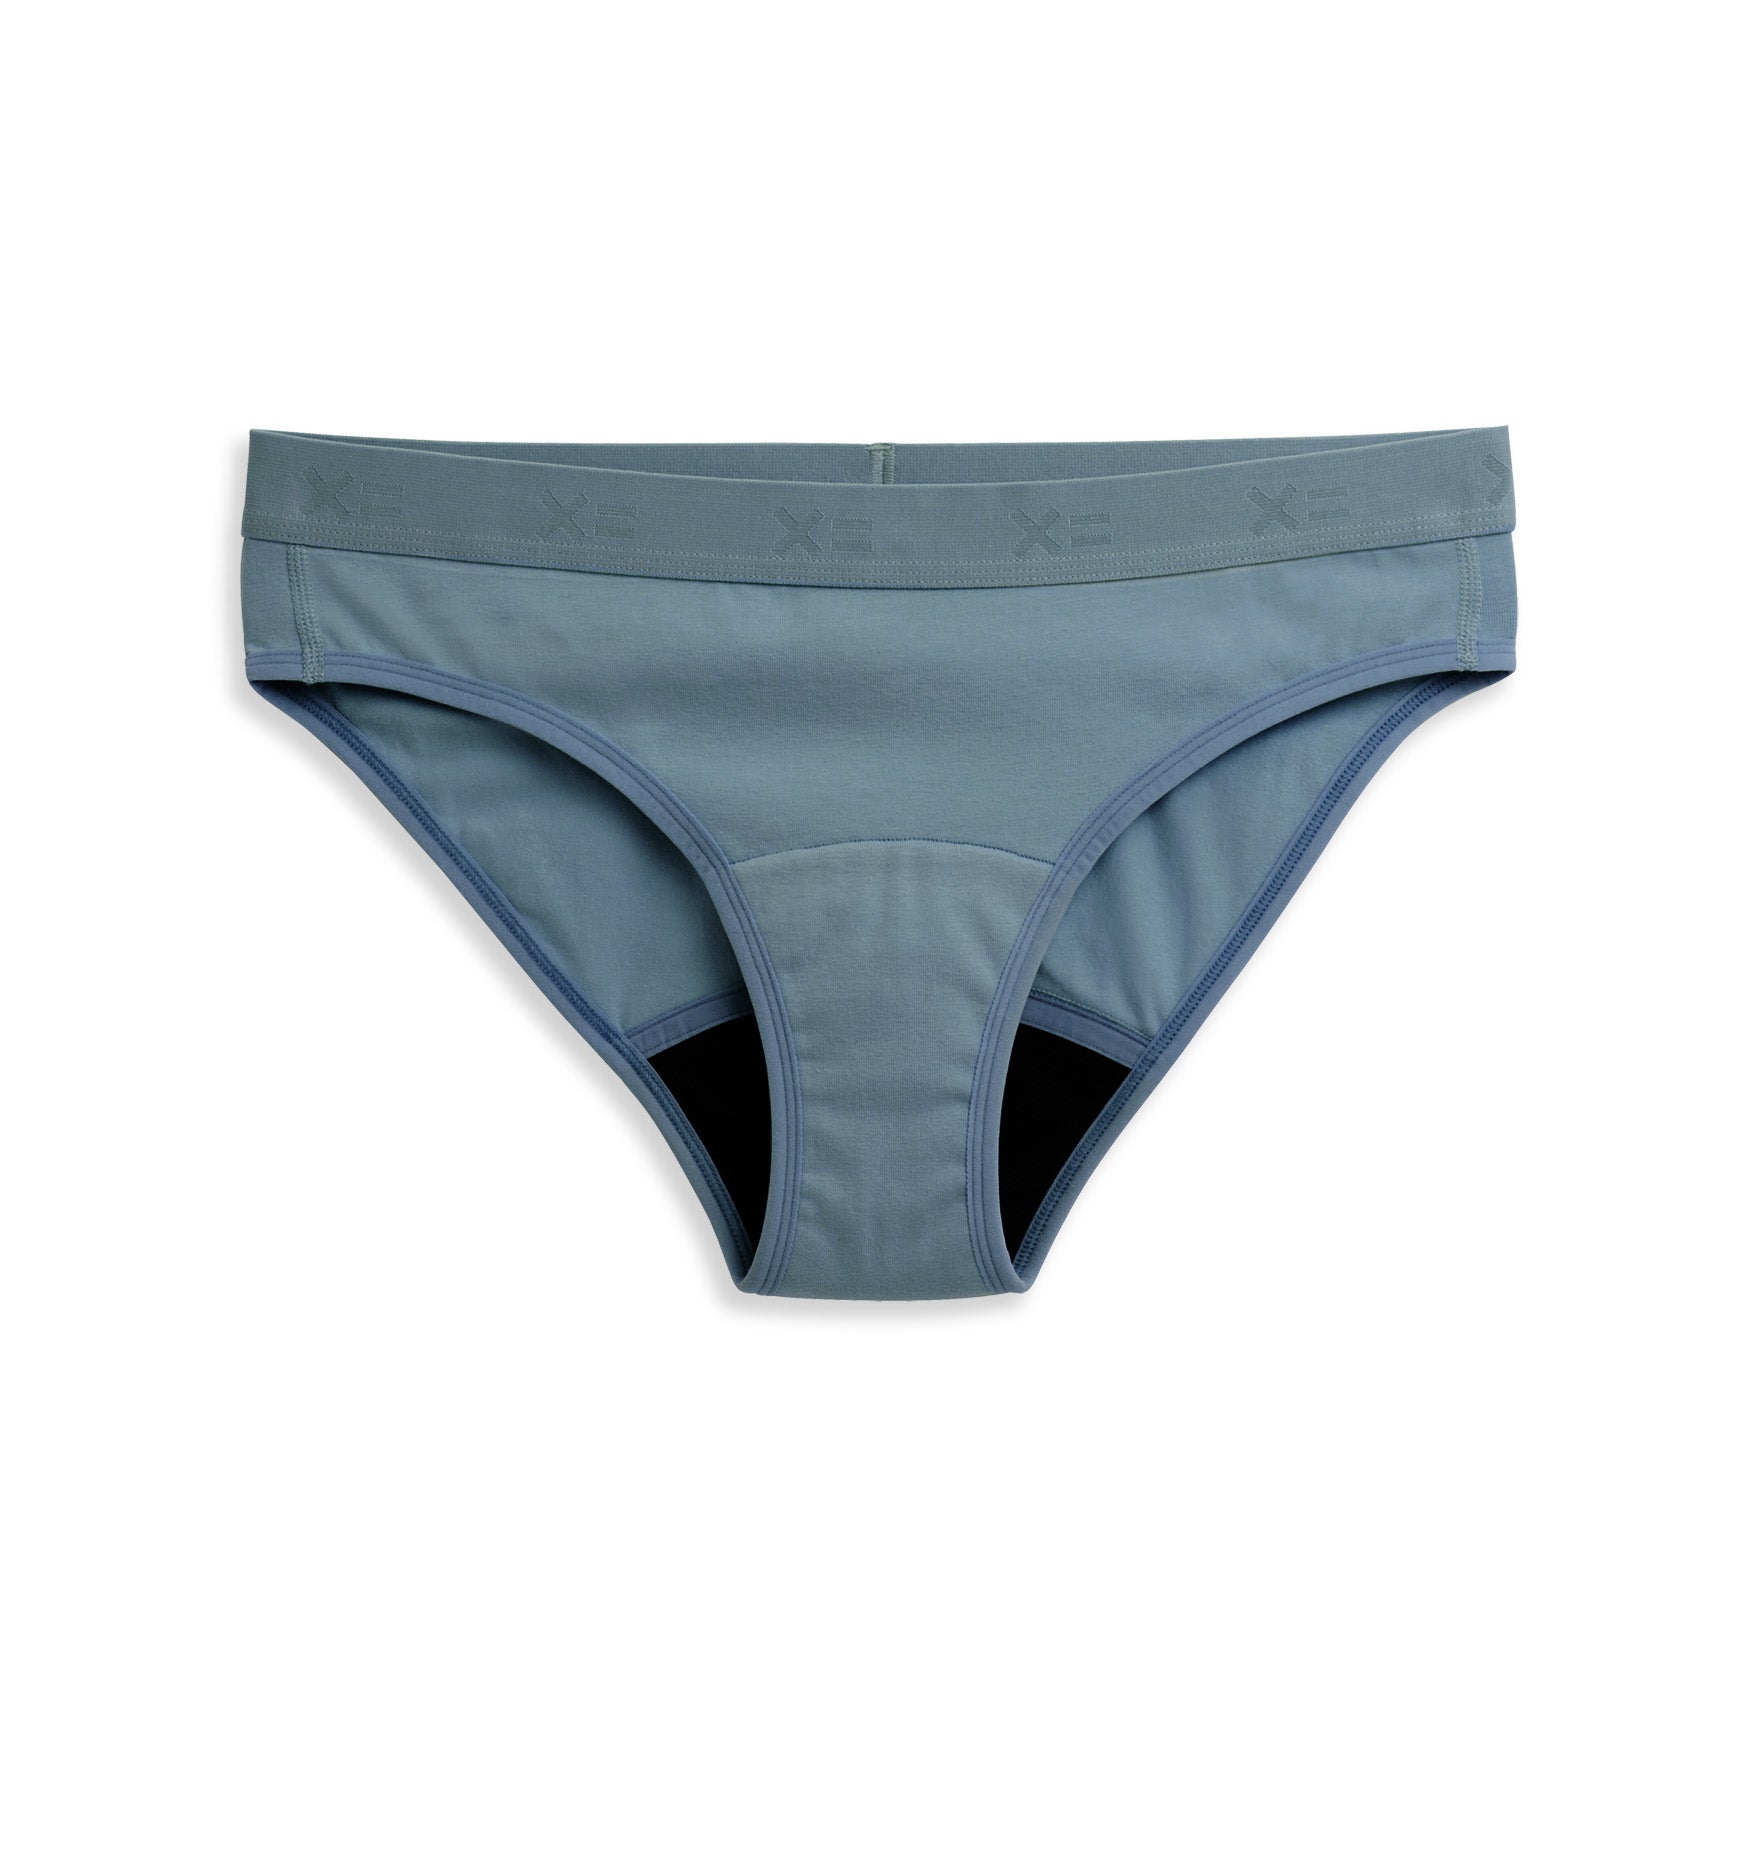 First Line Period Underwear BOGO 50% Off - TomboyX